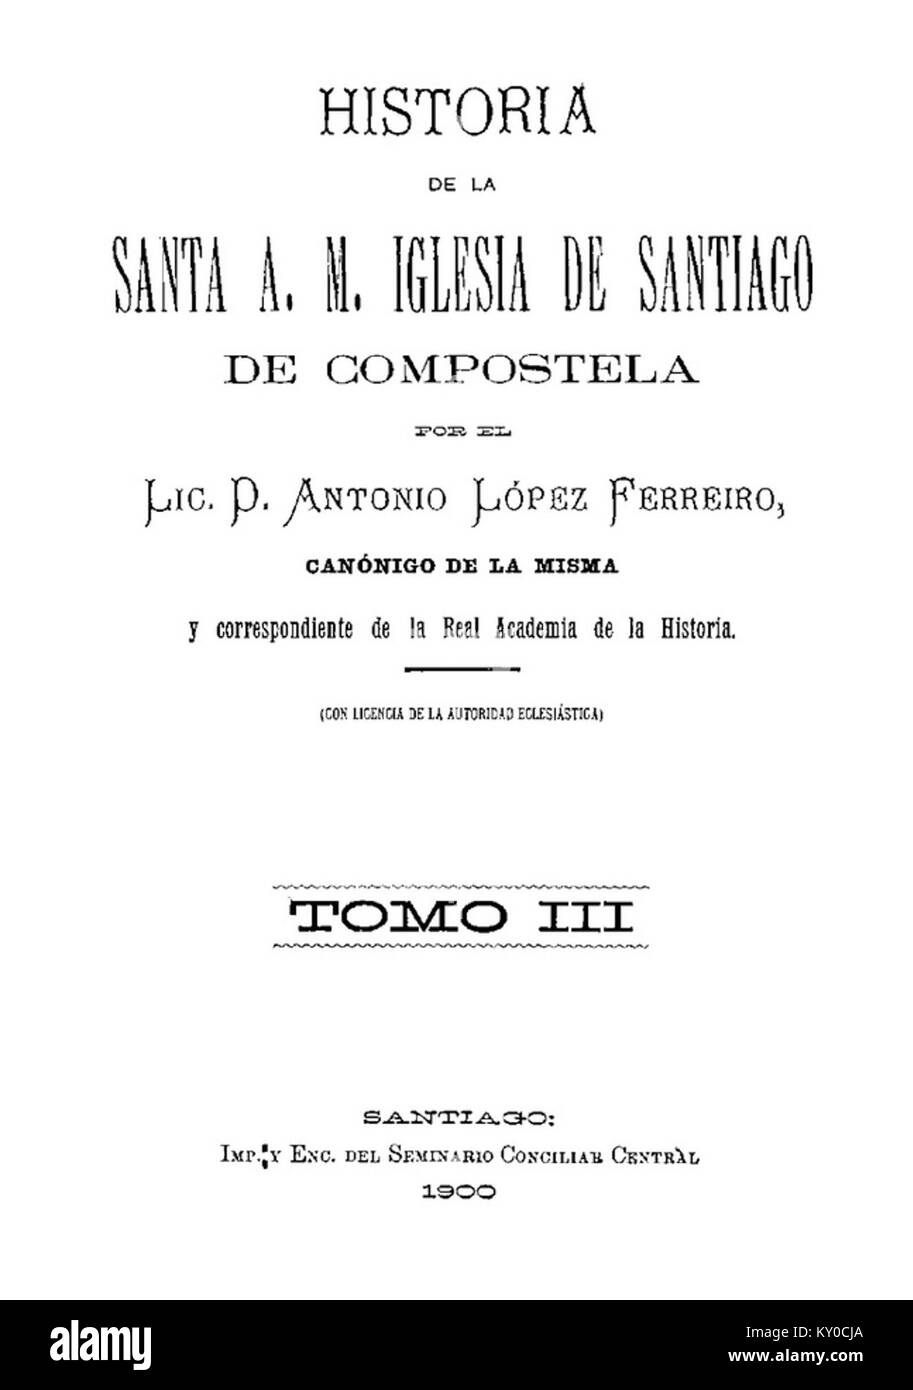 Historia de la Santa A. M. Iglesia de Santiago de Compostela por el Lic. D. Antonio López Ferreiro, canónigo de la misma, 1900, Tomo III Foto Stock